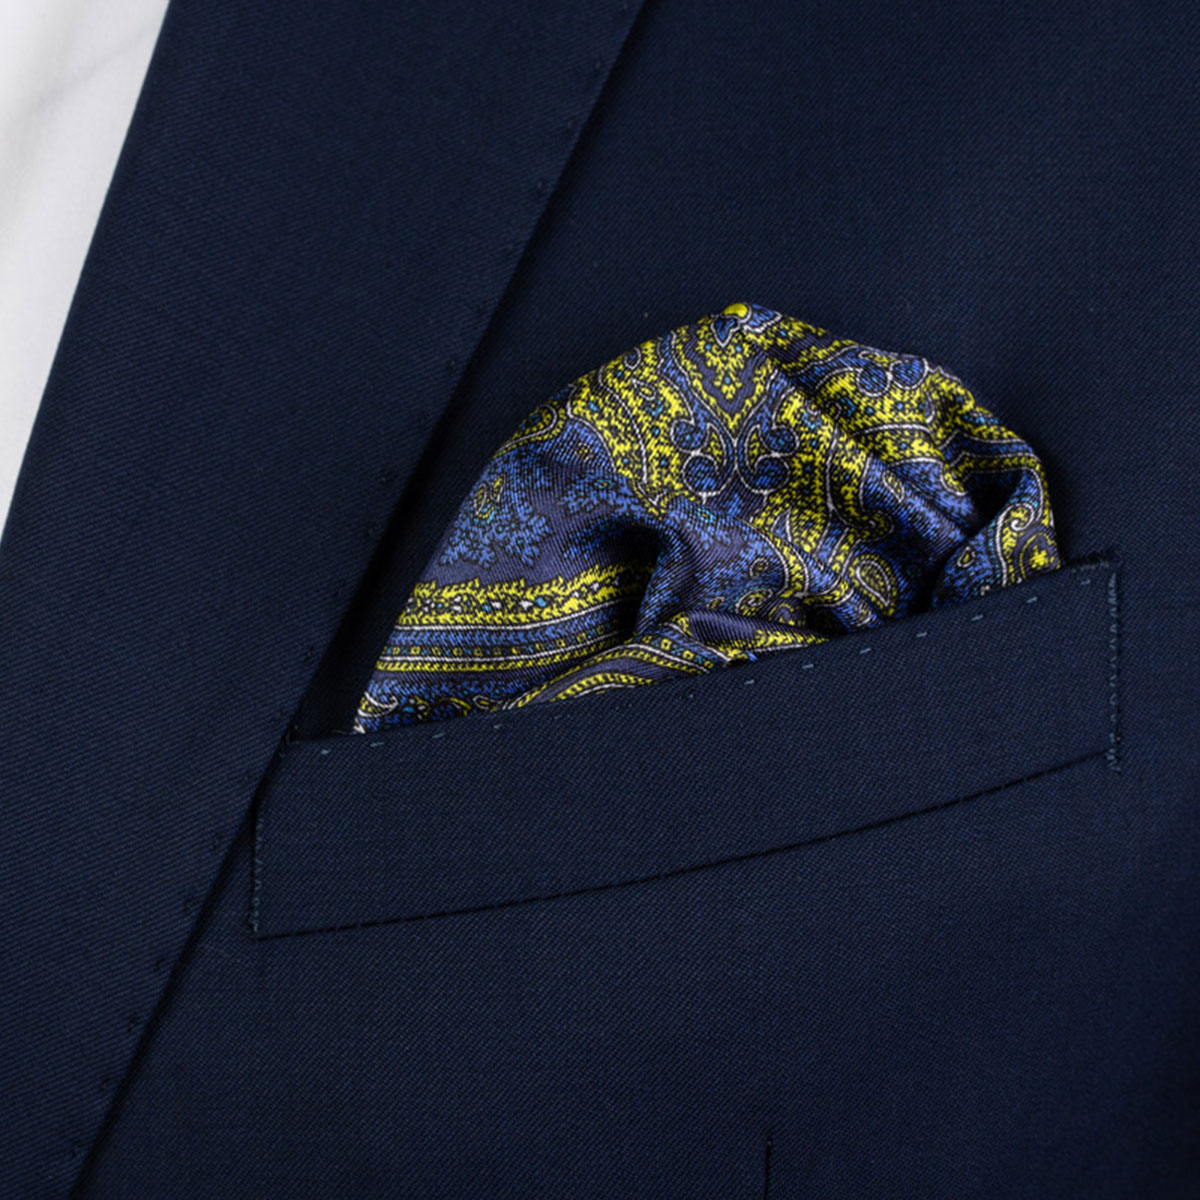 Einstecktuch aus Seidentwill mit Paisley-Muster in blau-gelb in Brusttasche